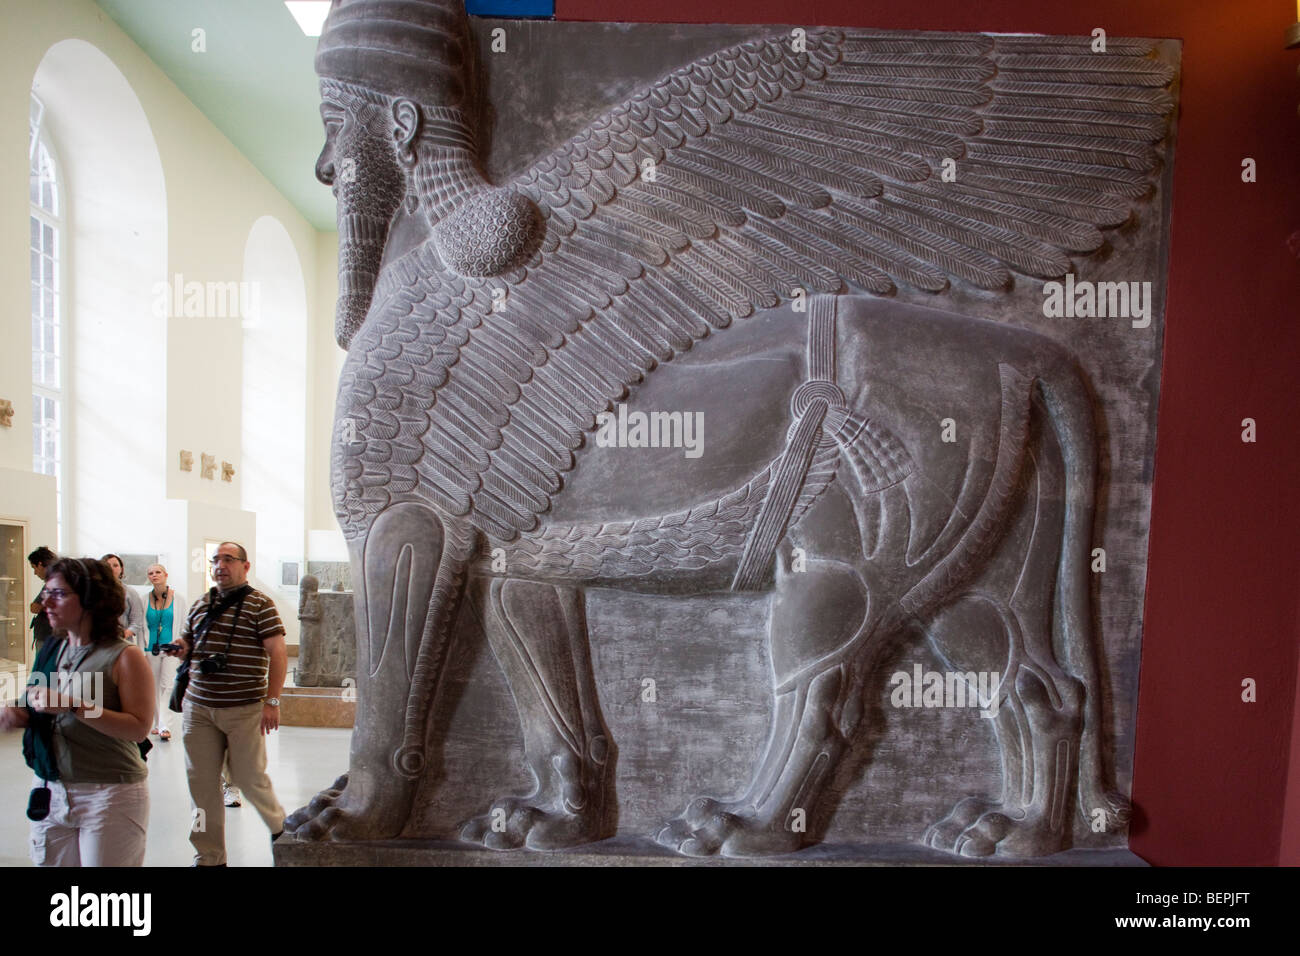 Colossale figura chiamato in assiro 'schedulamassu', con testa umana e leone alato corpo. Pergamon Museum di Berlino, Germania Foto Stock